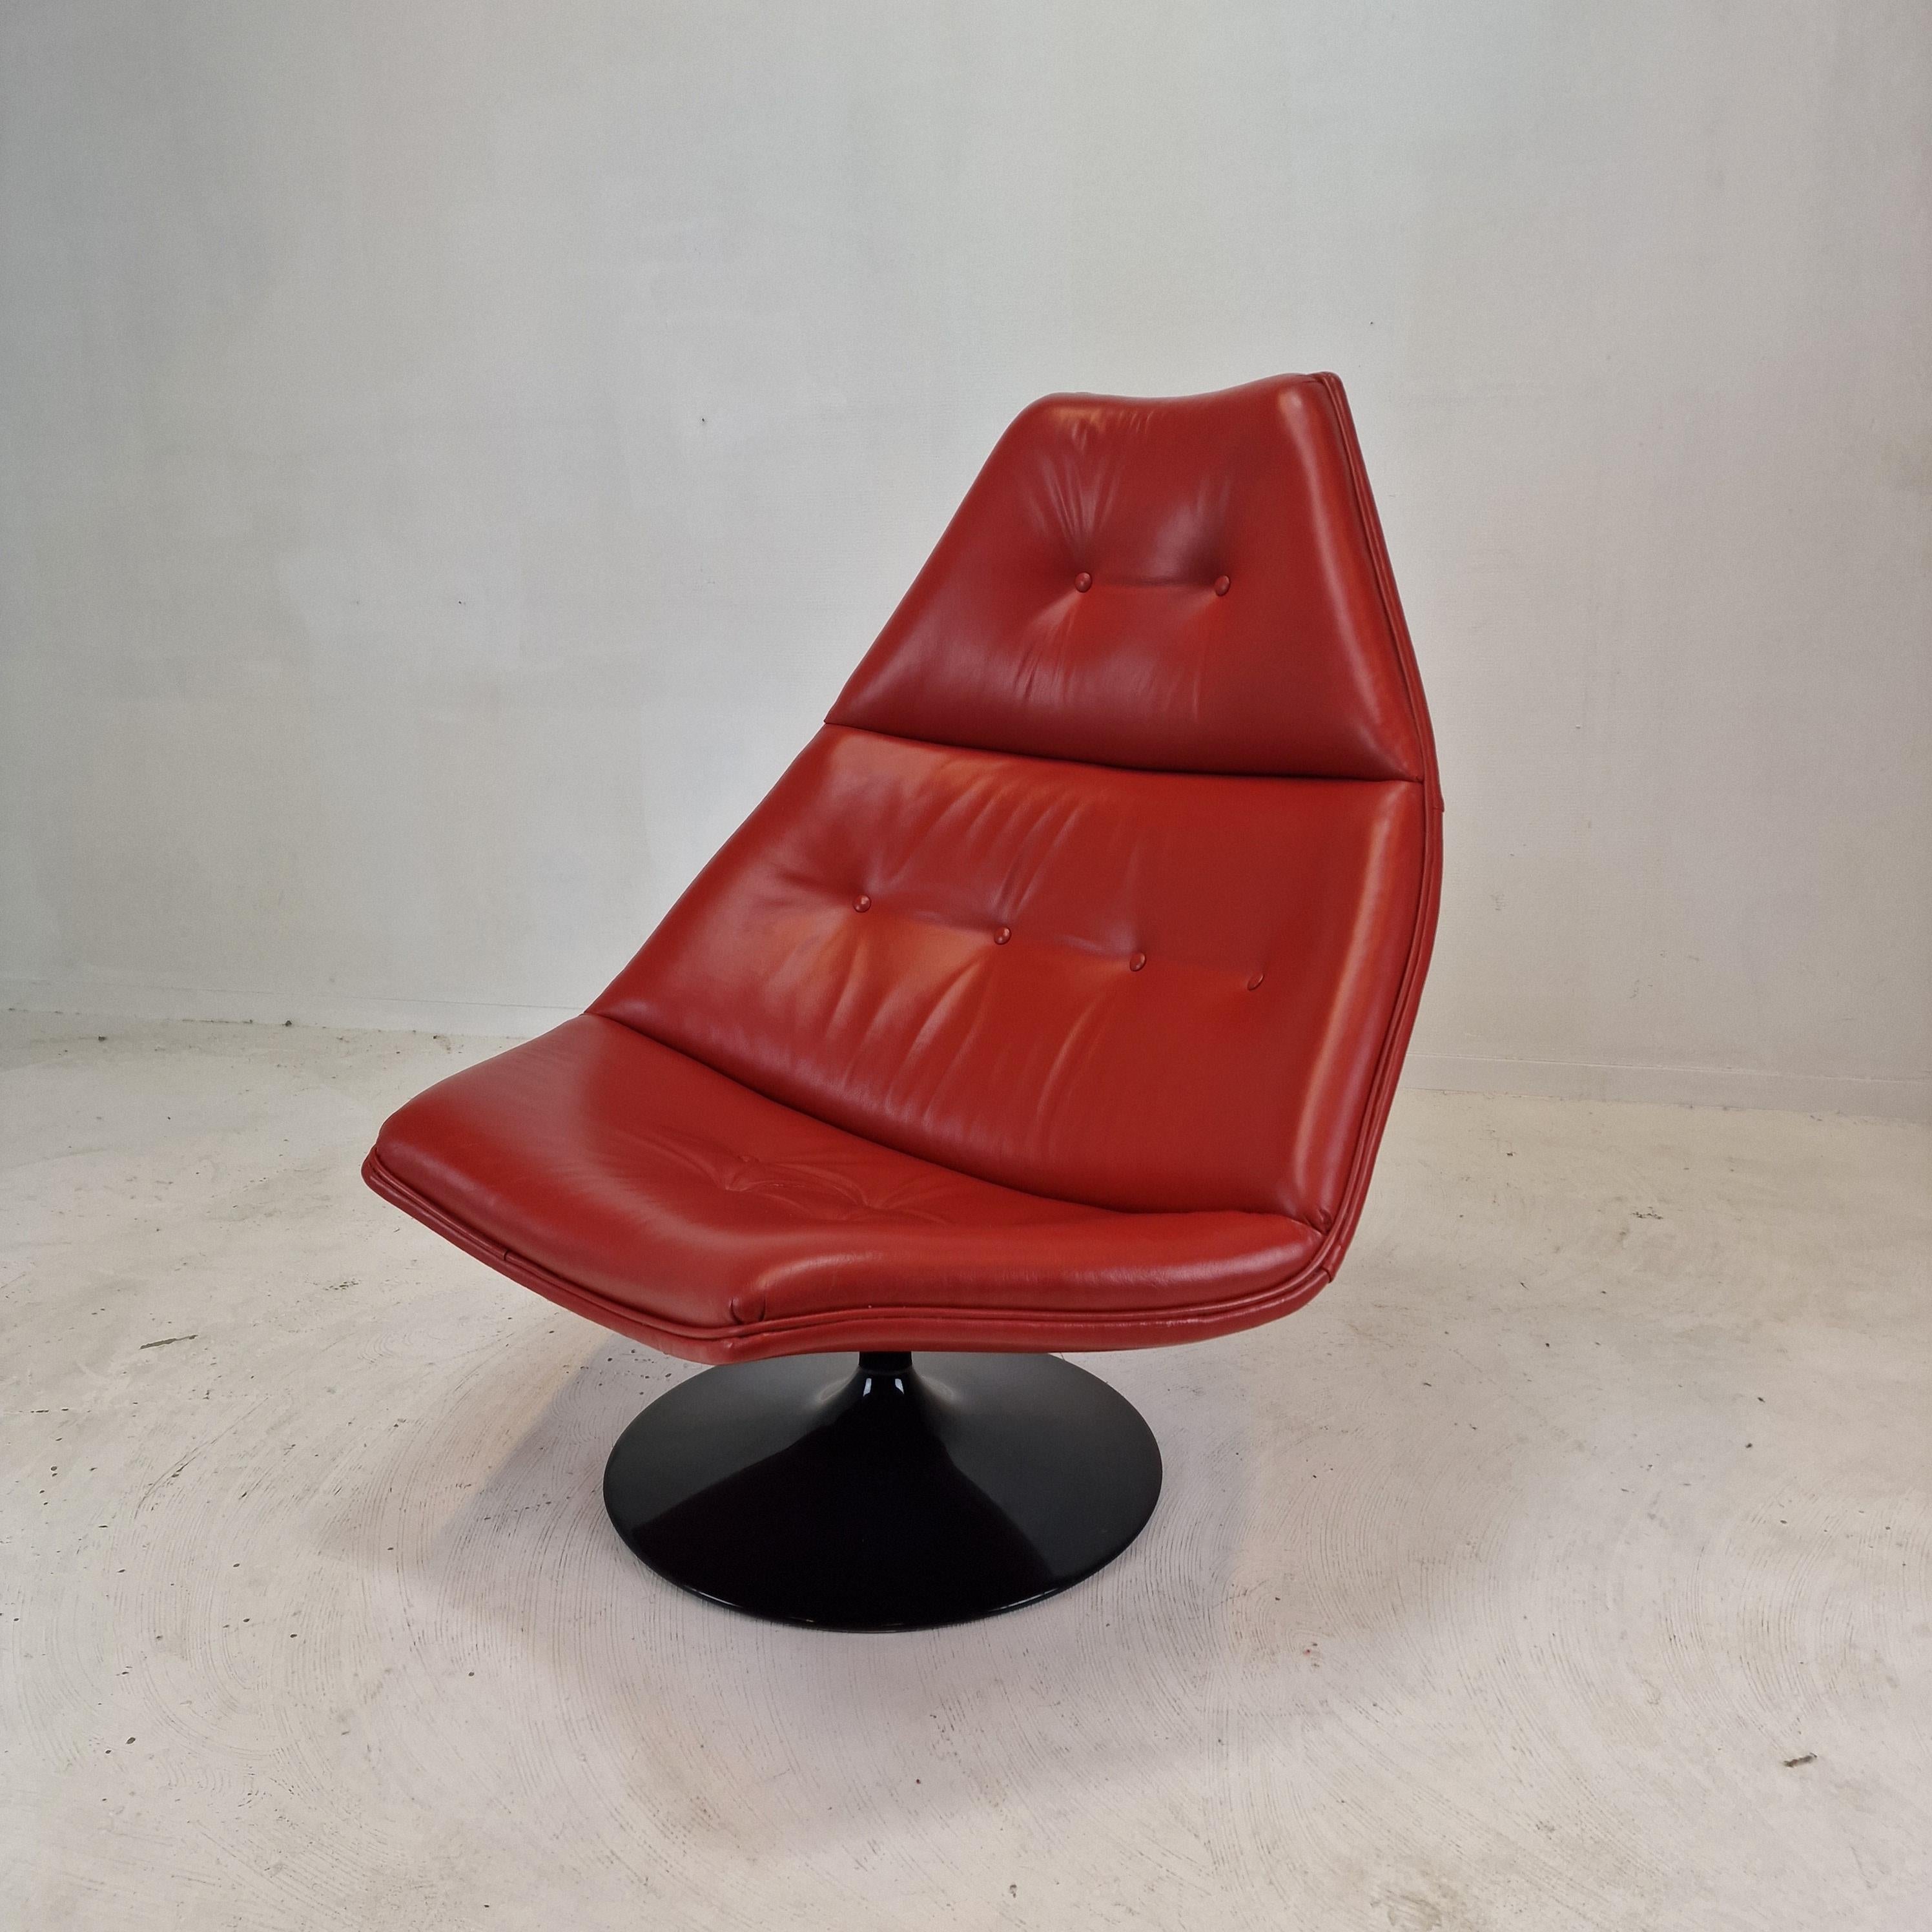 Chaise longue Artifort F510 très confortable. 
Conçu par le célèbre designer anglais Geoffrey Harcourt dans les années 70. 

Cadre en bois très solide avec un grand pied métallique pivotant.

La chaise est en cuir de haute qualité, de couleur